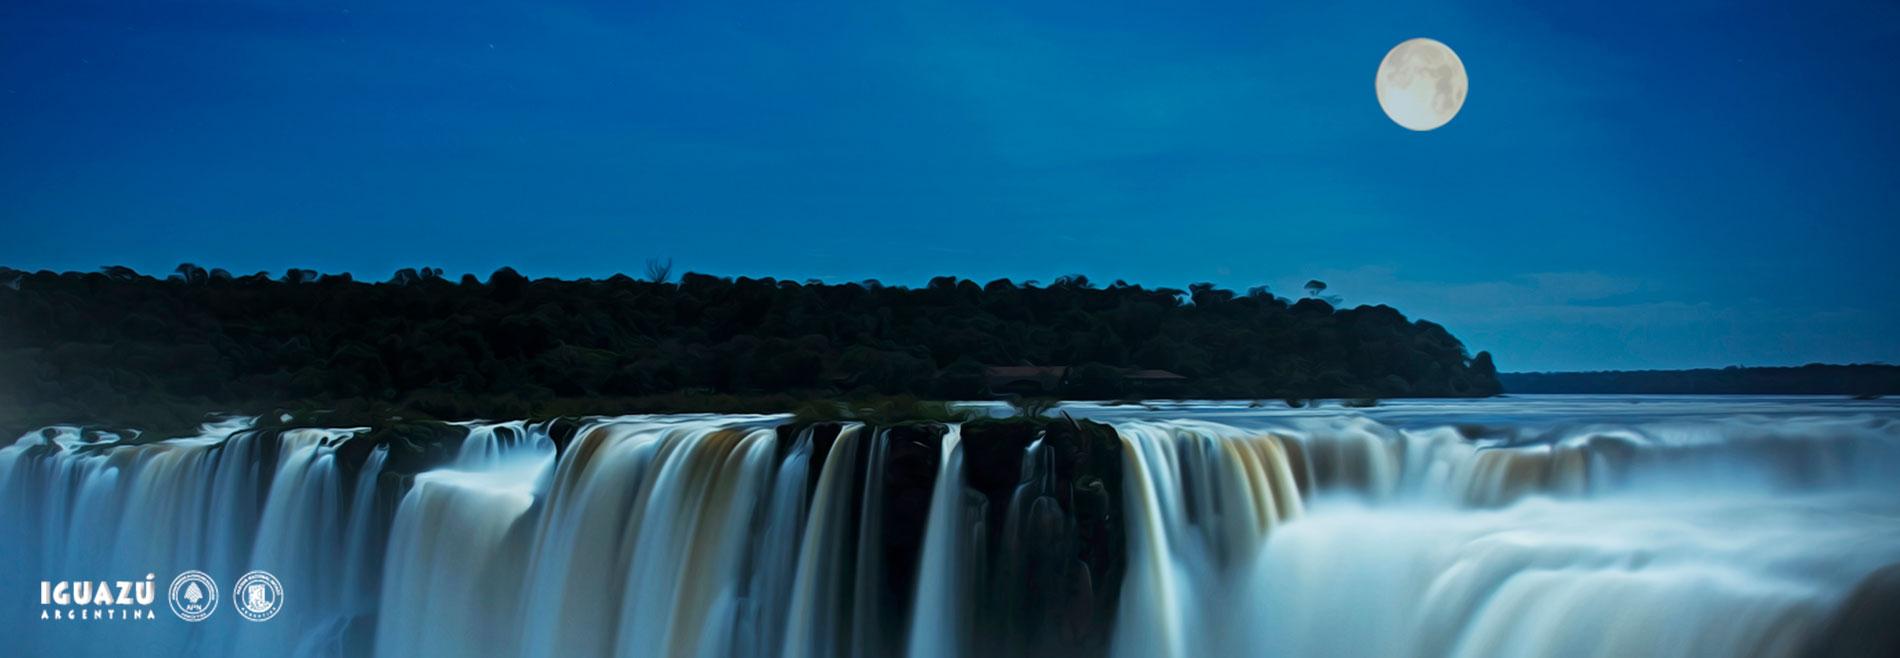 Paseo de luna llena en Cataratas del Iguazú 2022